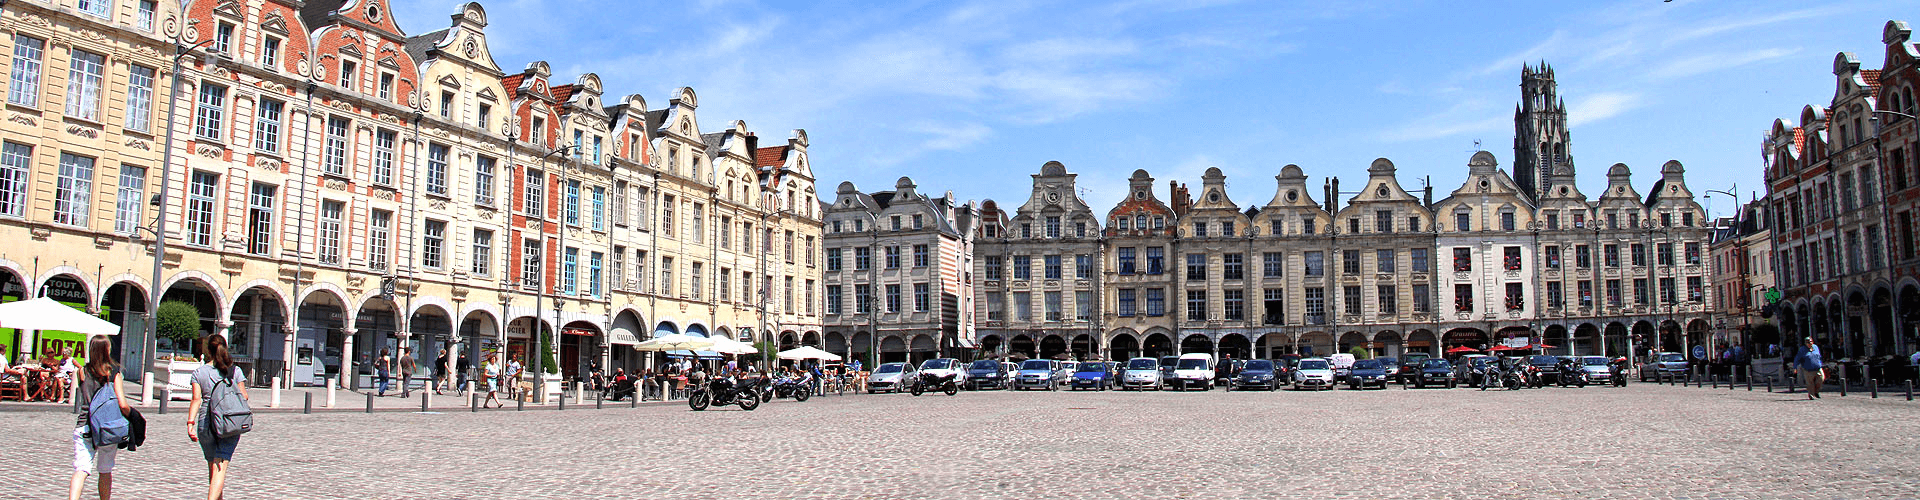 Arras: hoofdstad van Pas-de-Calais in Frankrijk